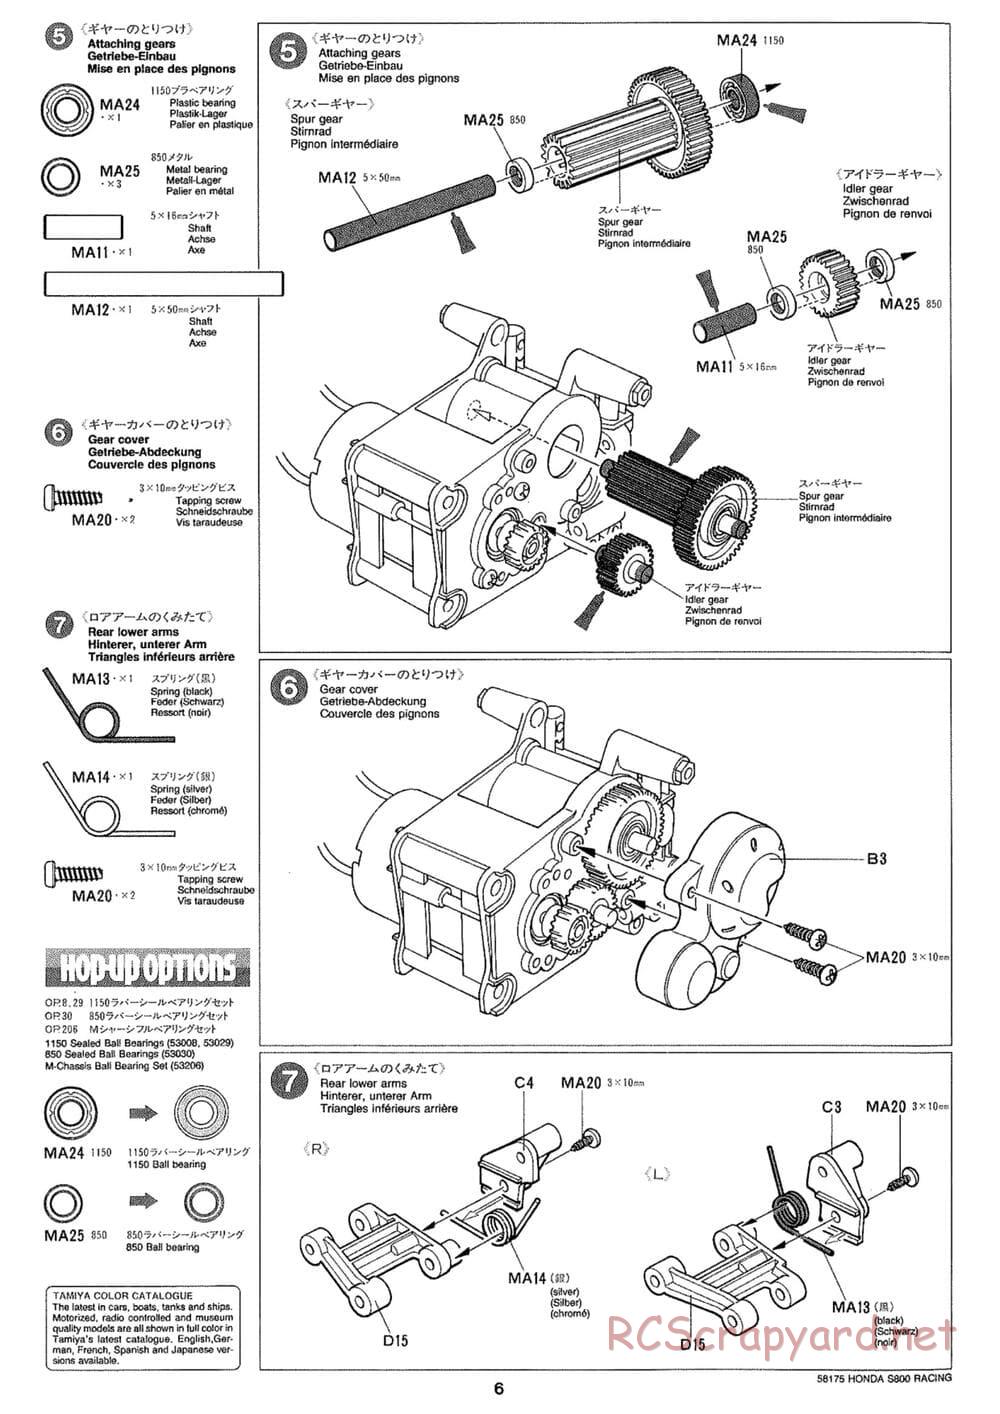 Tamiya - Honda S800 Racing - M02 Chassis - Manual - Page 6